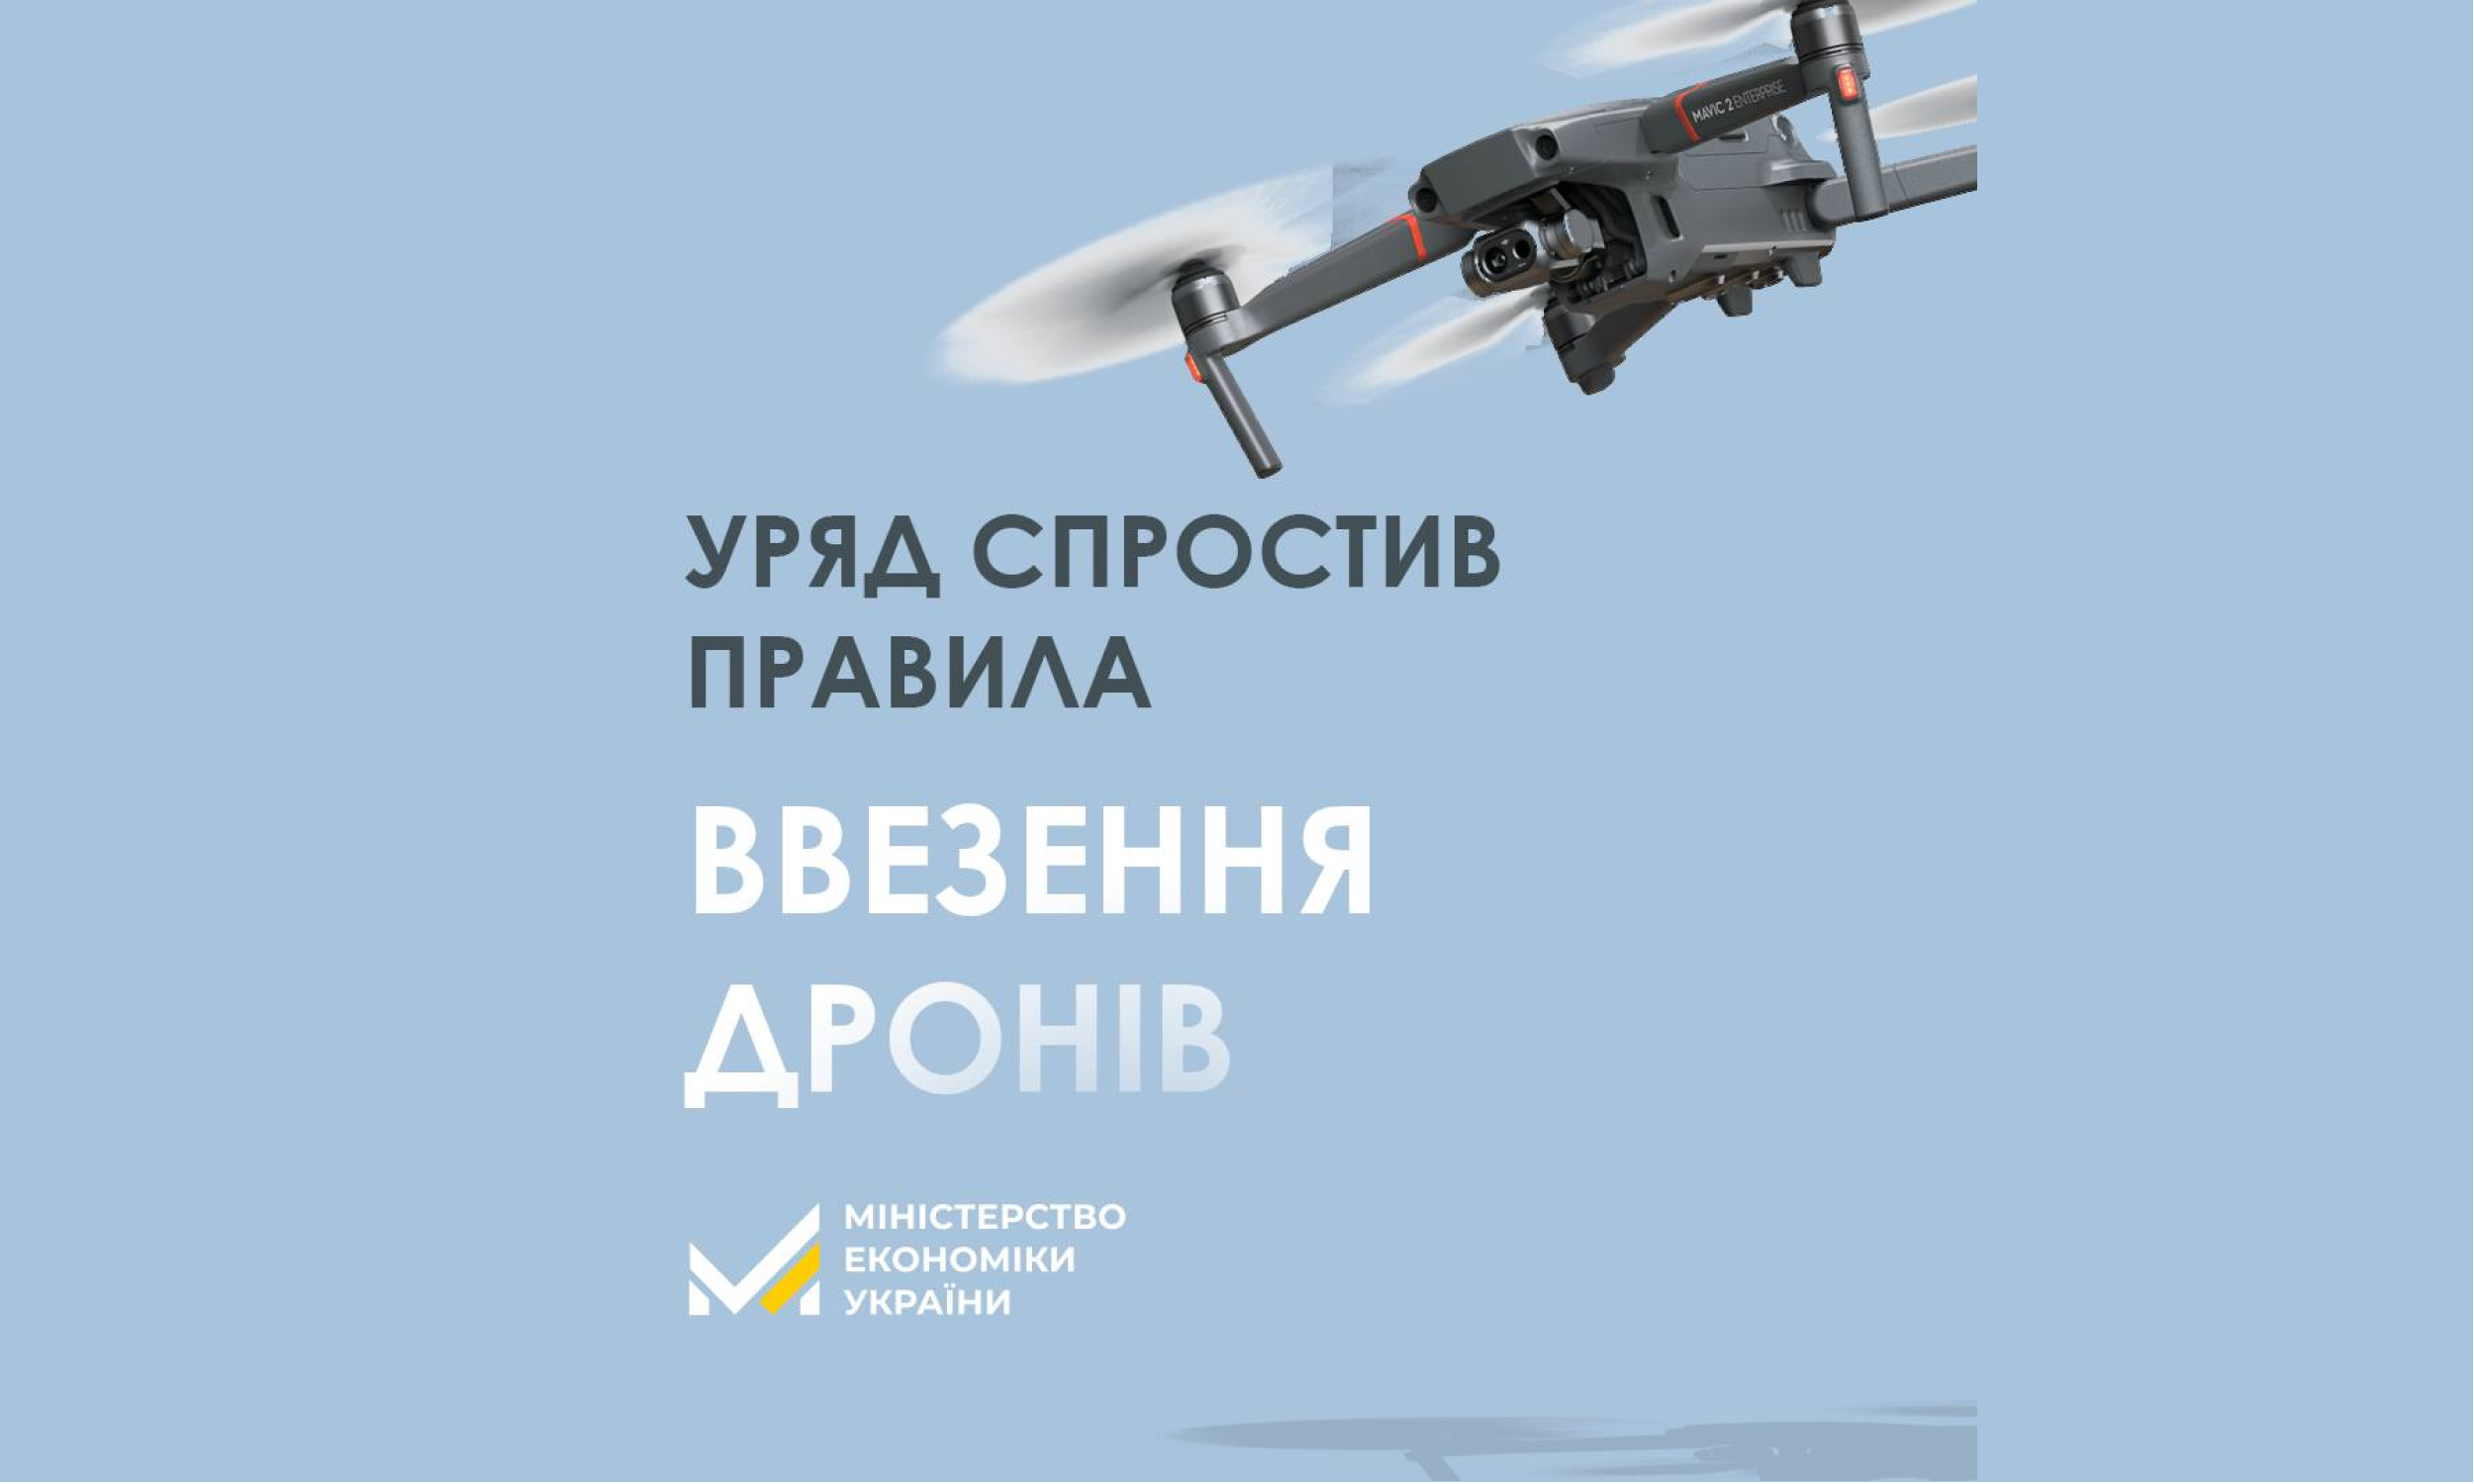 Уряд спростив правила ввезення в Україну дронів: тепер гарантійні листи не потрібні